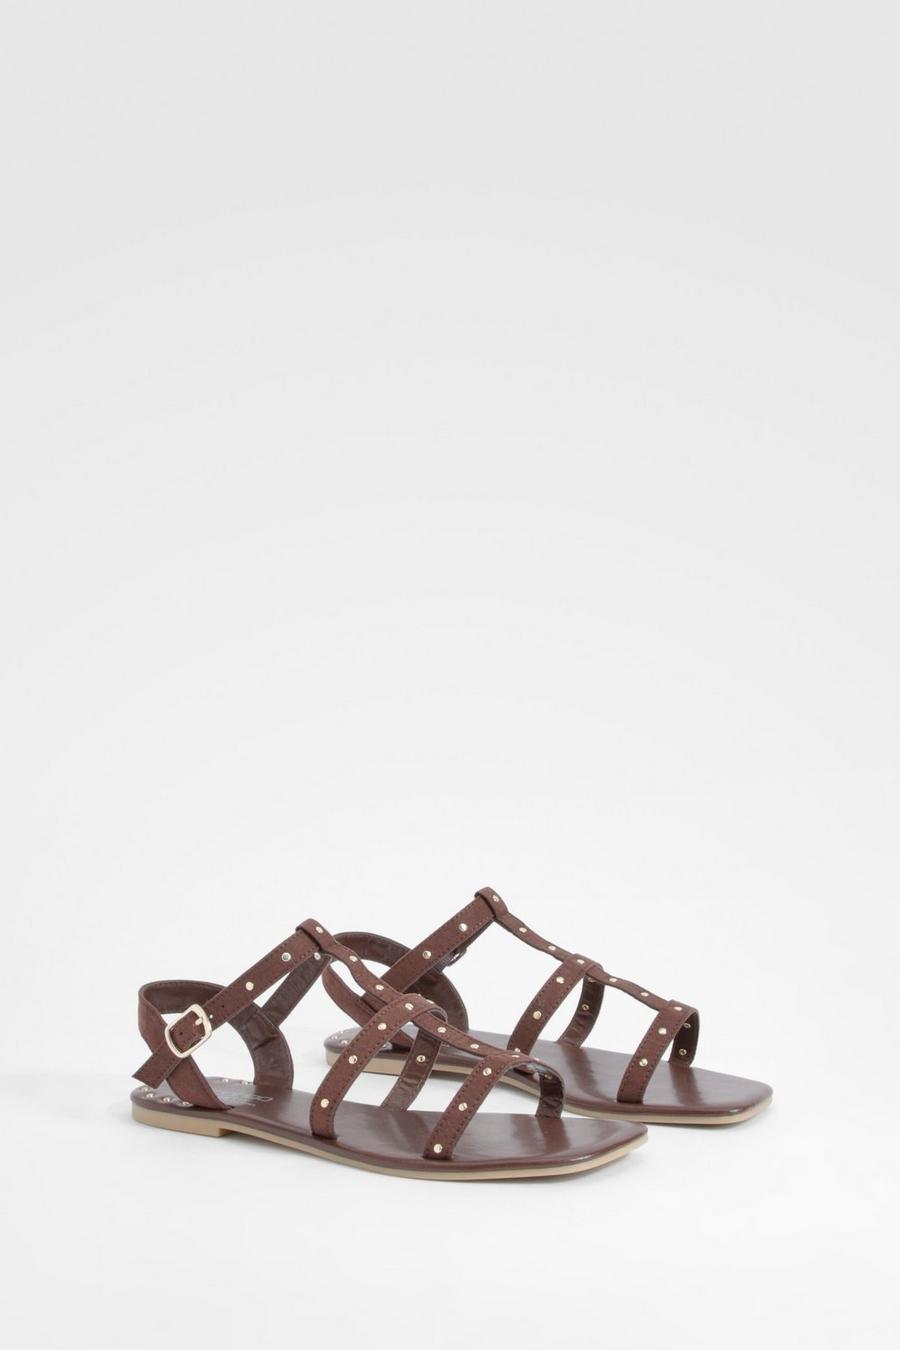 Sandali a calzata ampia stile Gladiatore con borchie, Chocolate